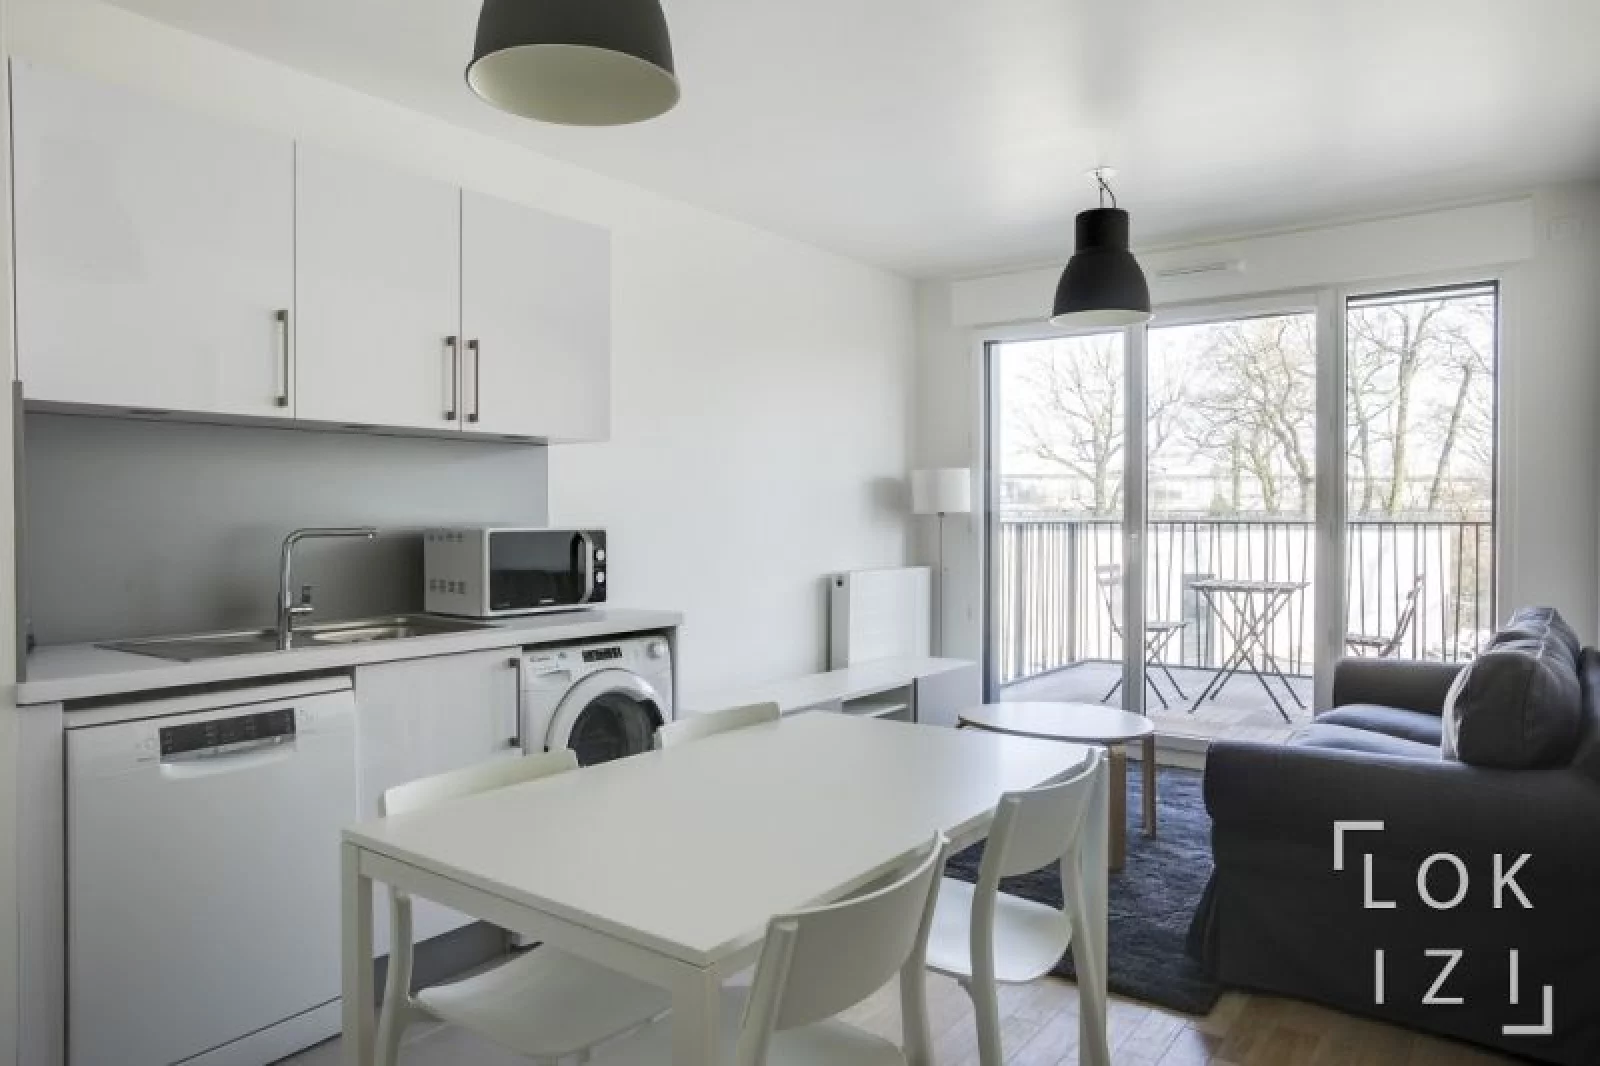 Location appartement meublé 2 pièces 38m²  (Paris sud - le Plessis Robinson)